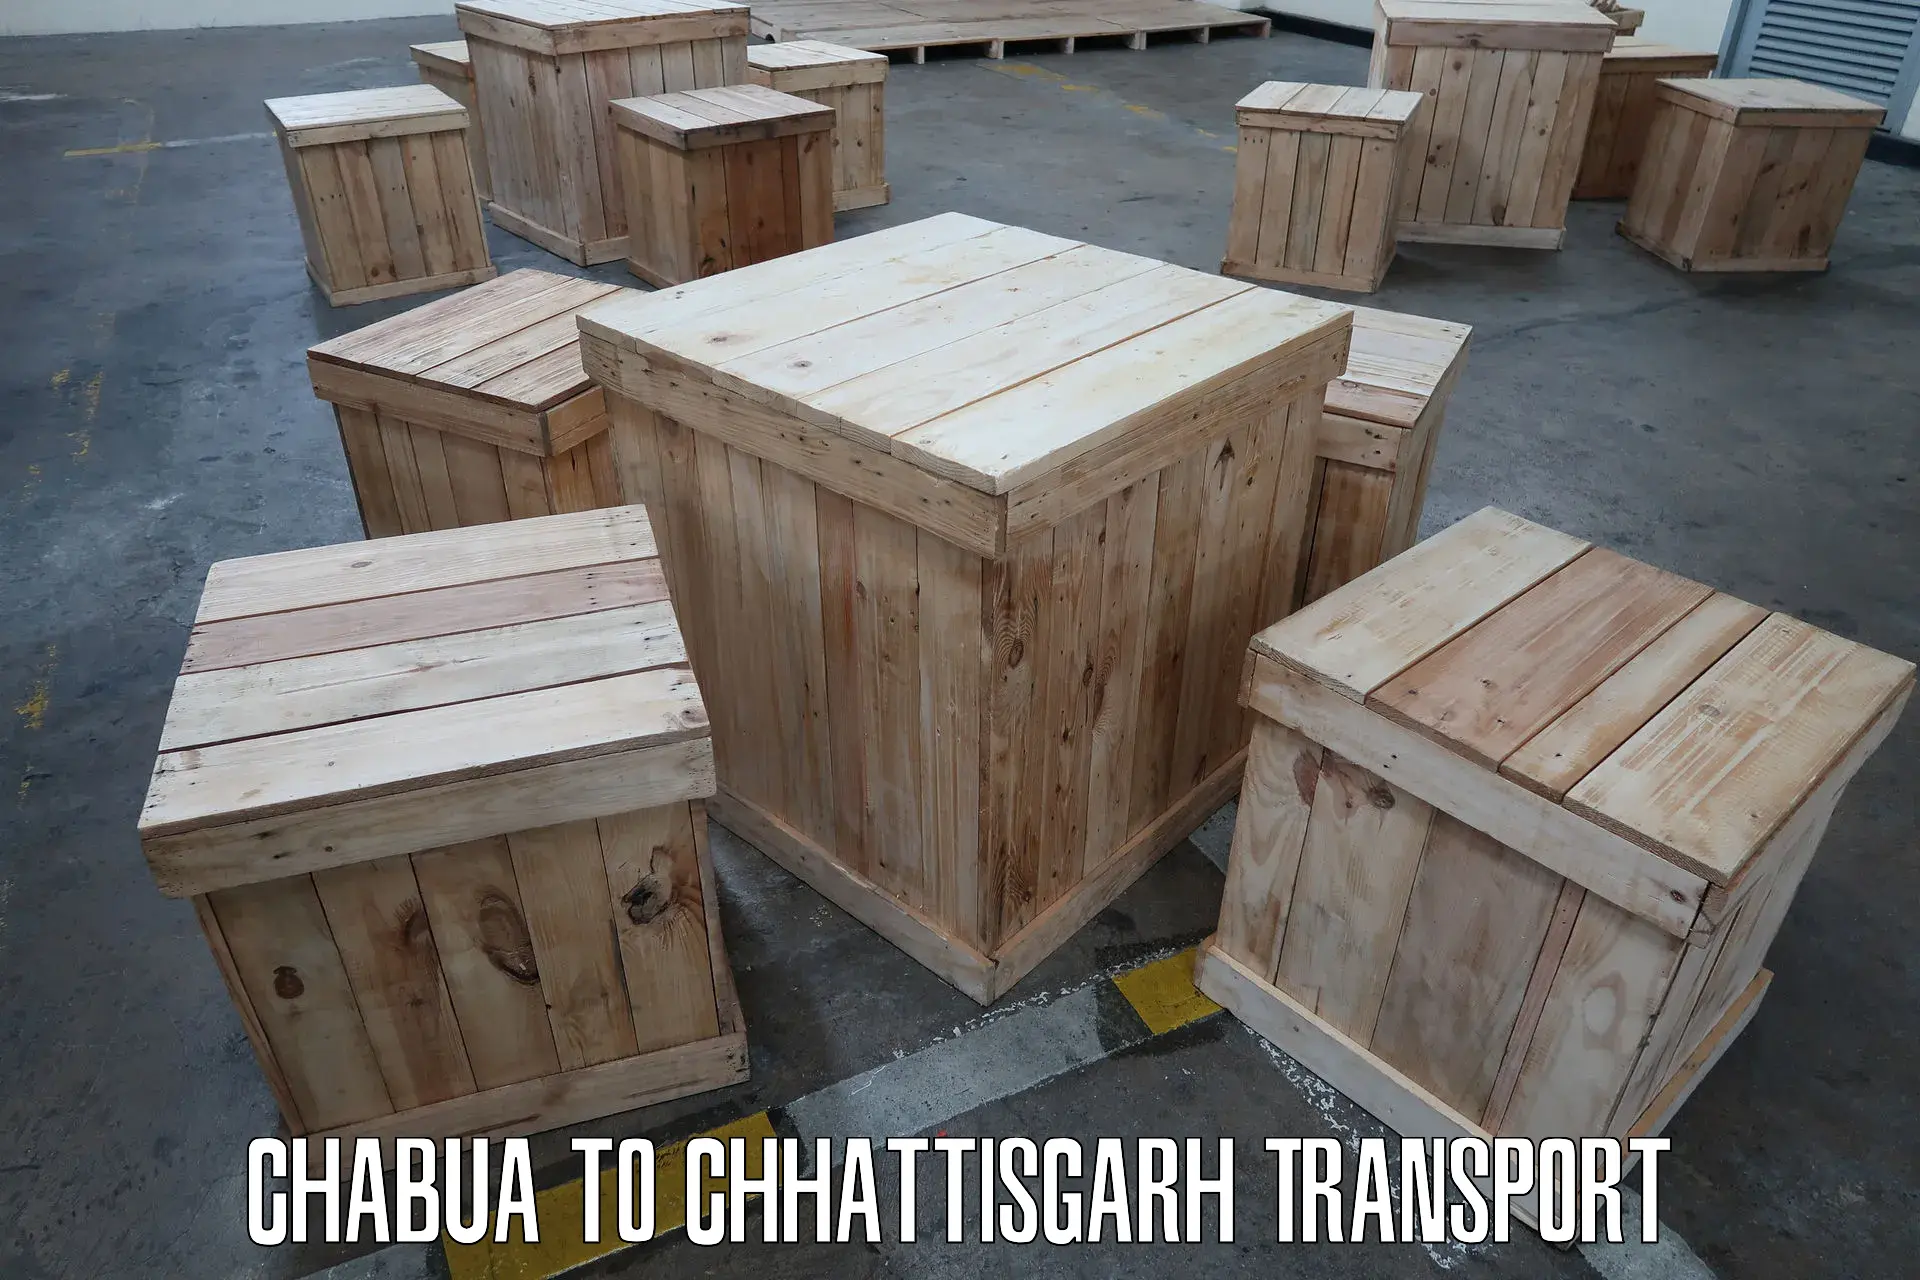 Transport shared services Chabua to Korea Chhattisgarh